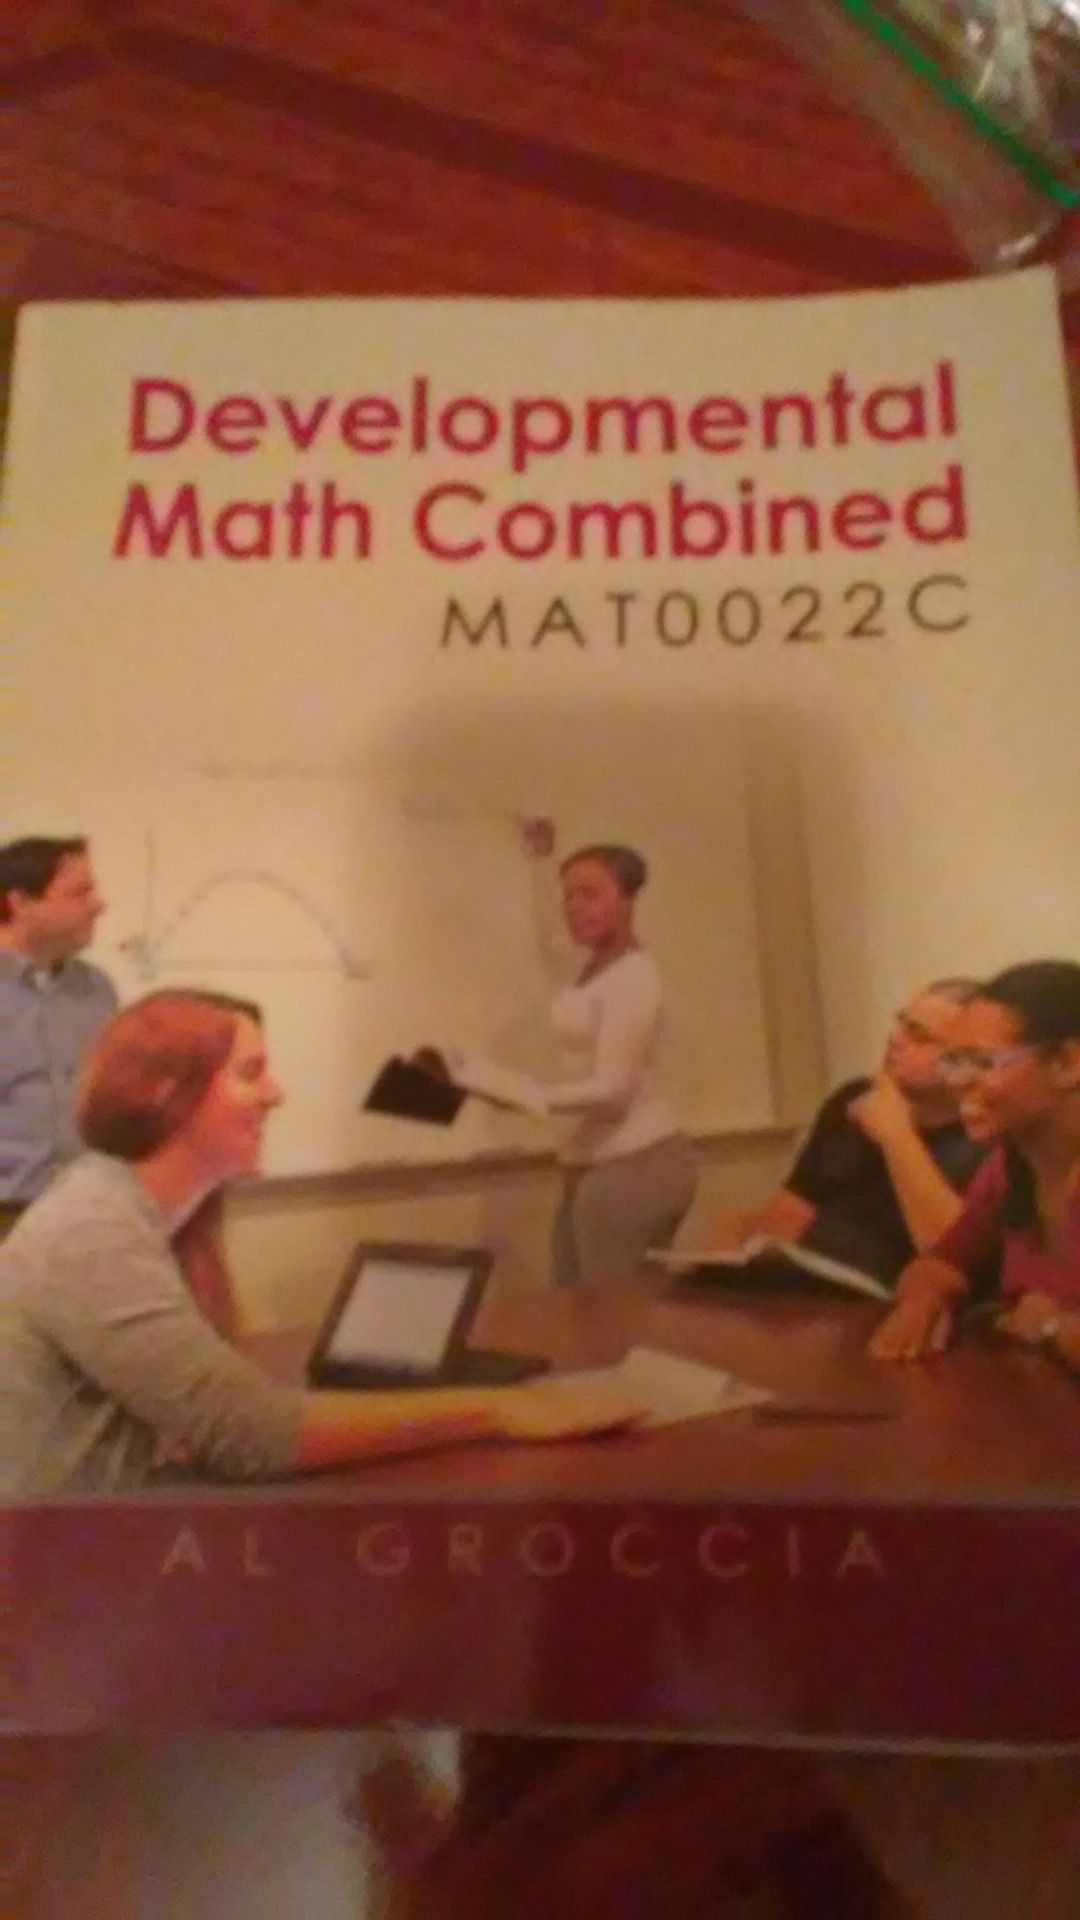 Development math book